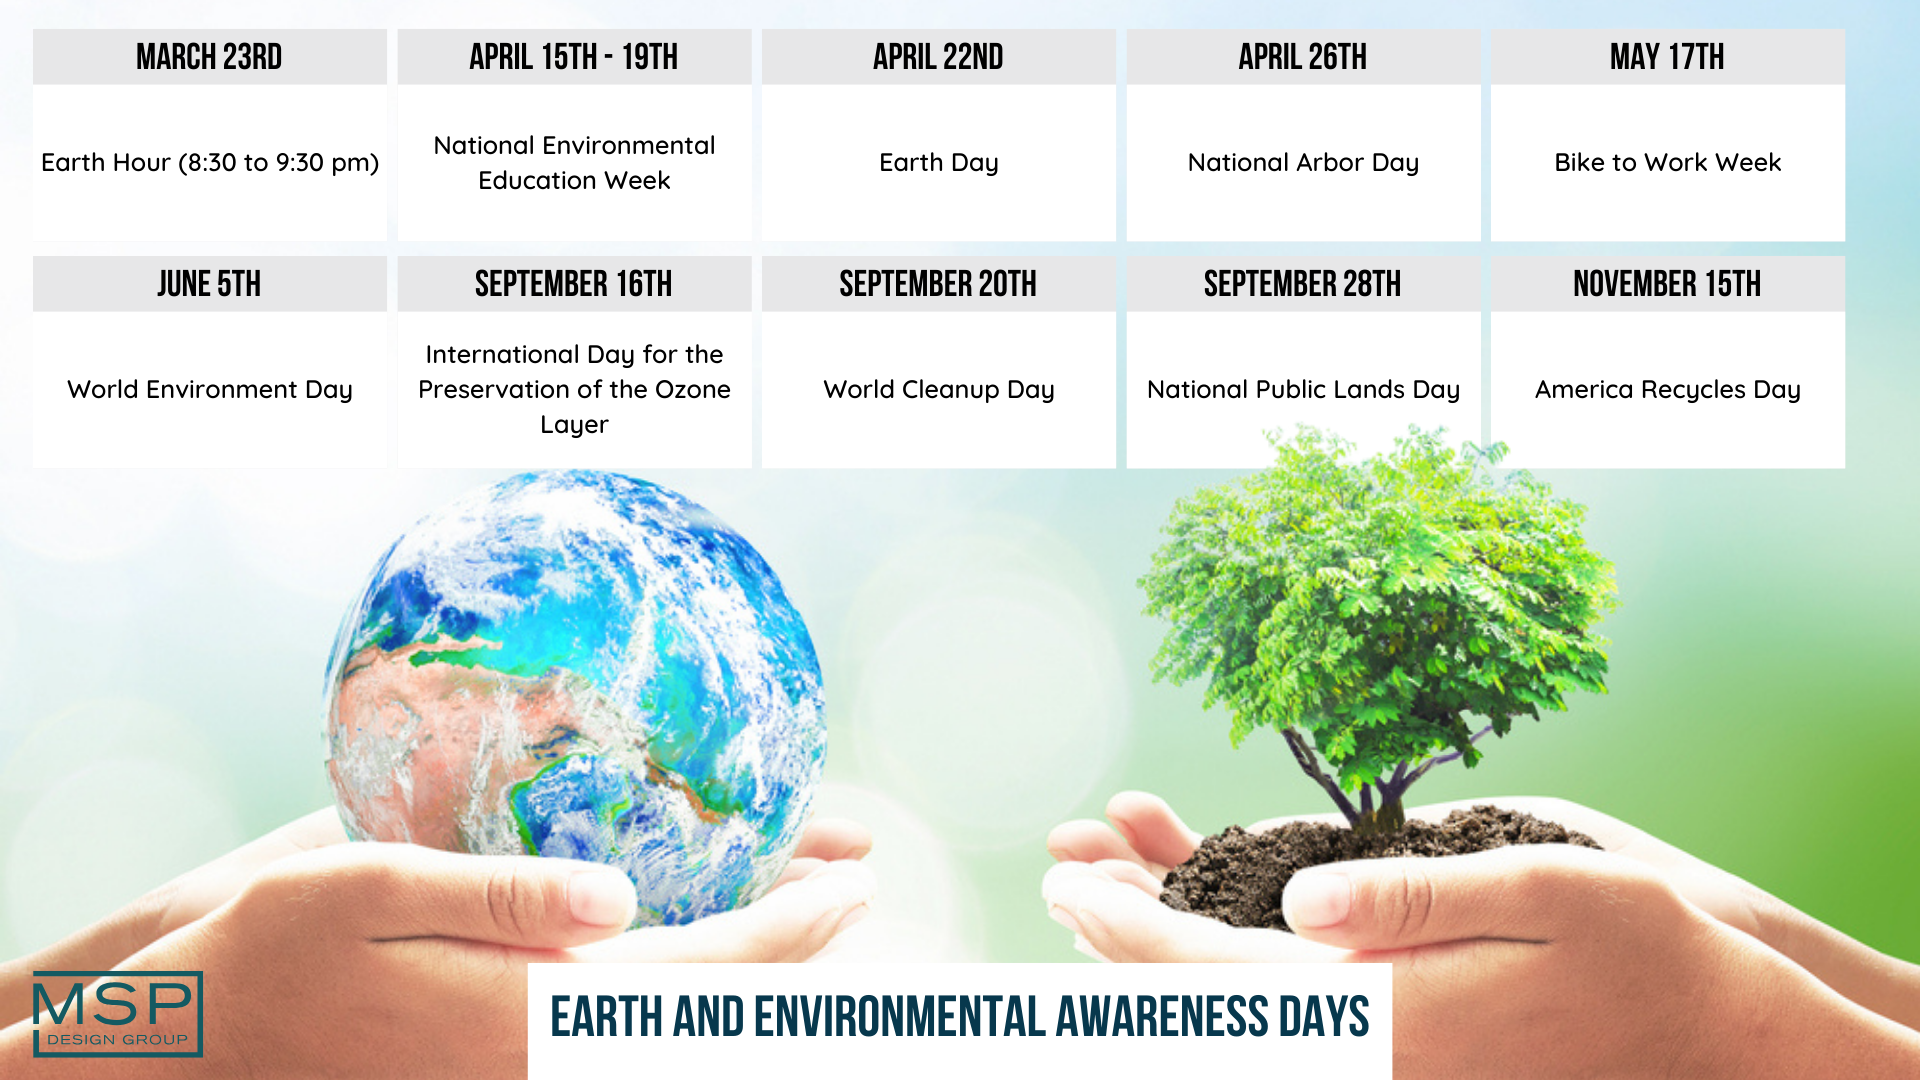 Employee Appreciation Calendar - Earth and Environmental Awareness